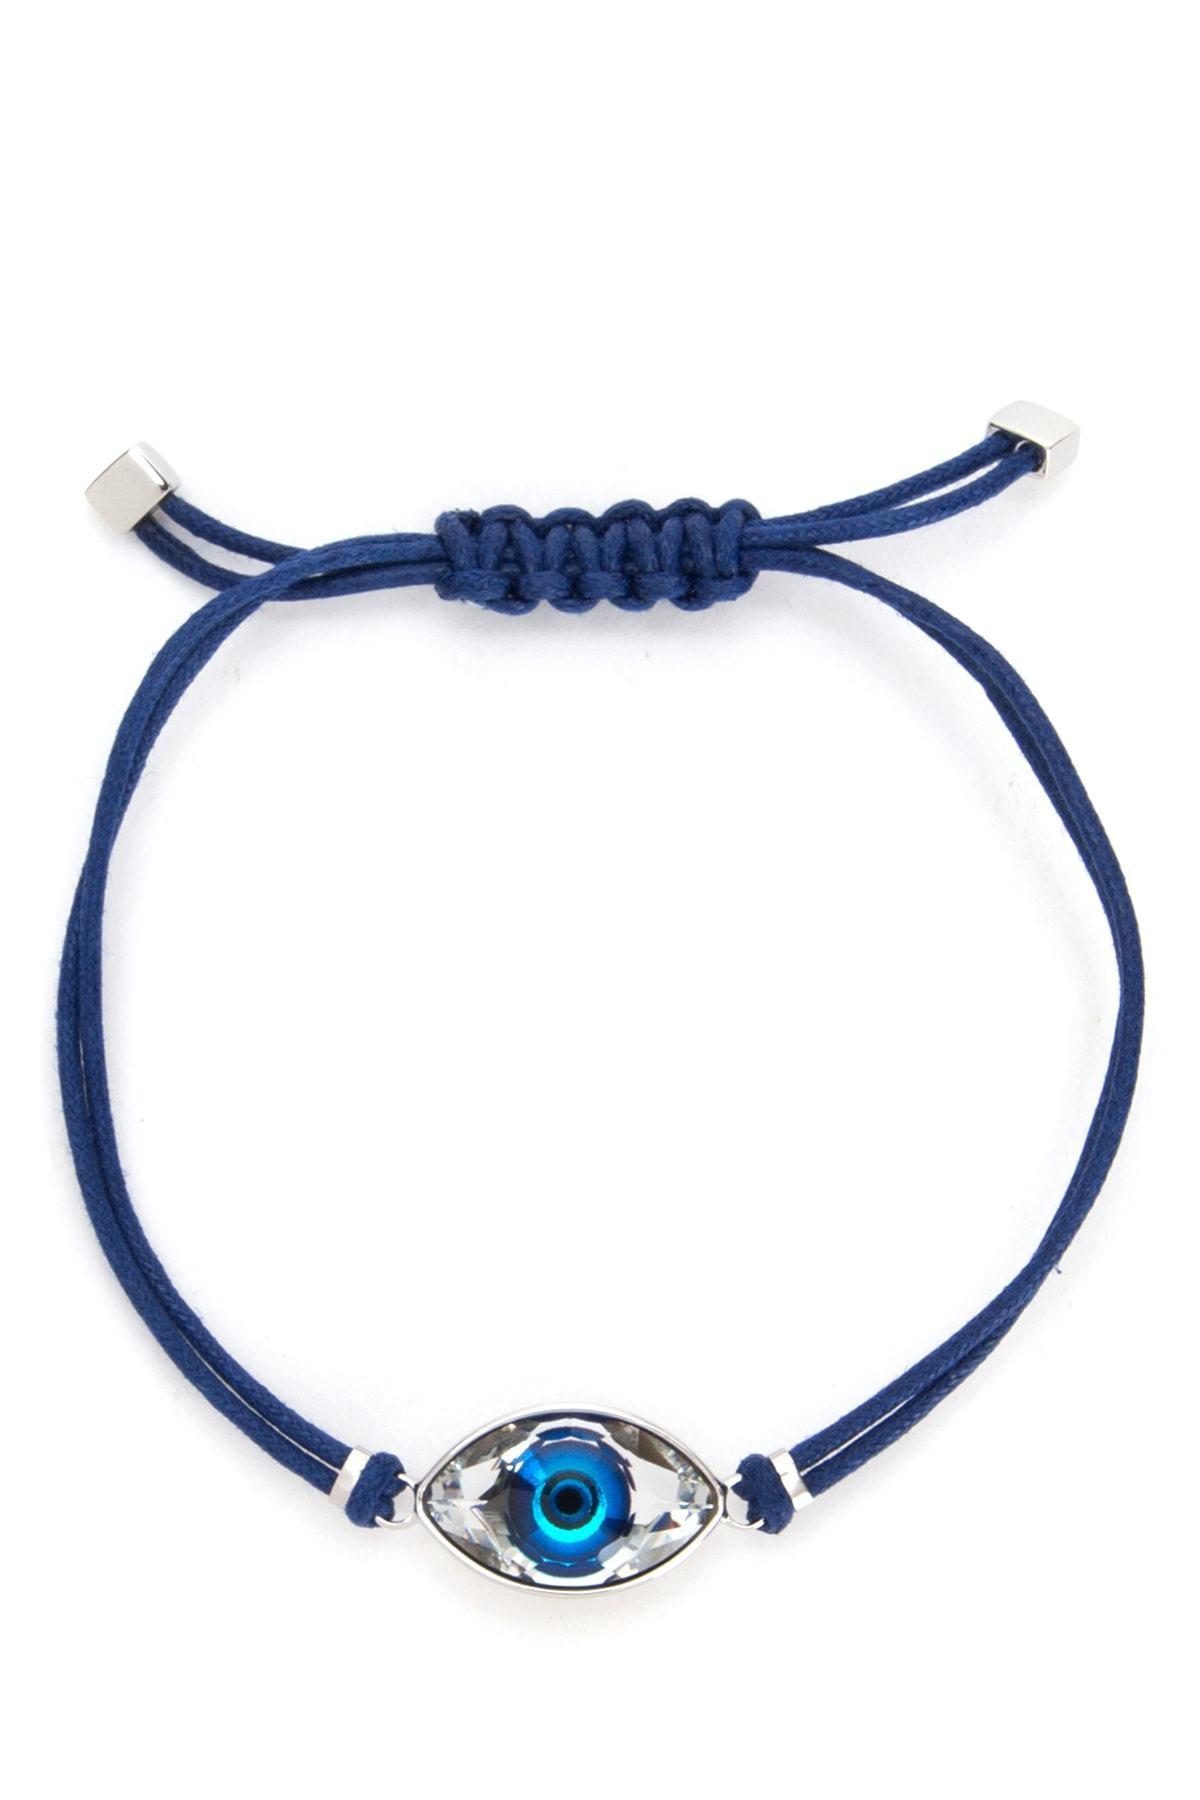 Blue Elastic Bracelet Evil Eye Bracelets at Rs 500/piece in Udaipur | ID:  2852631087897